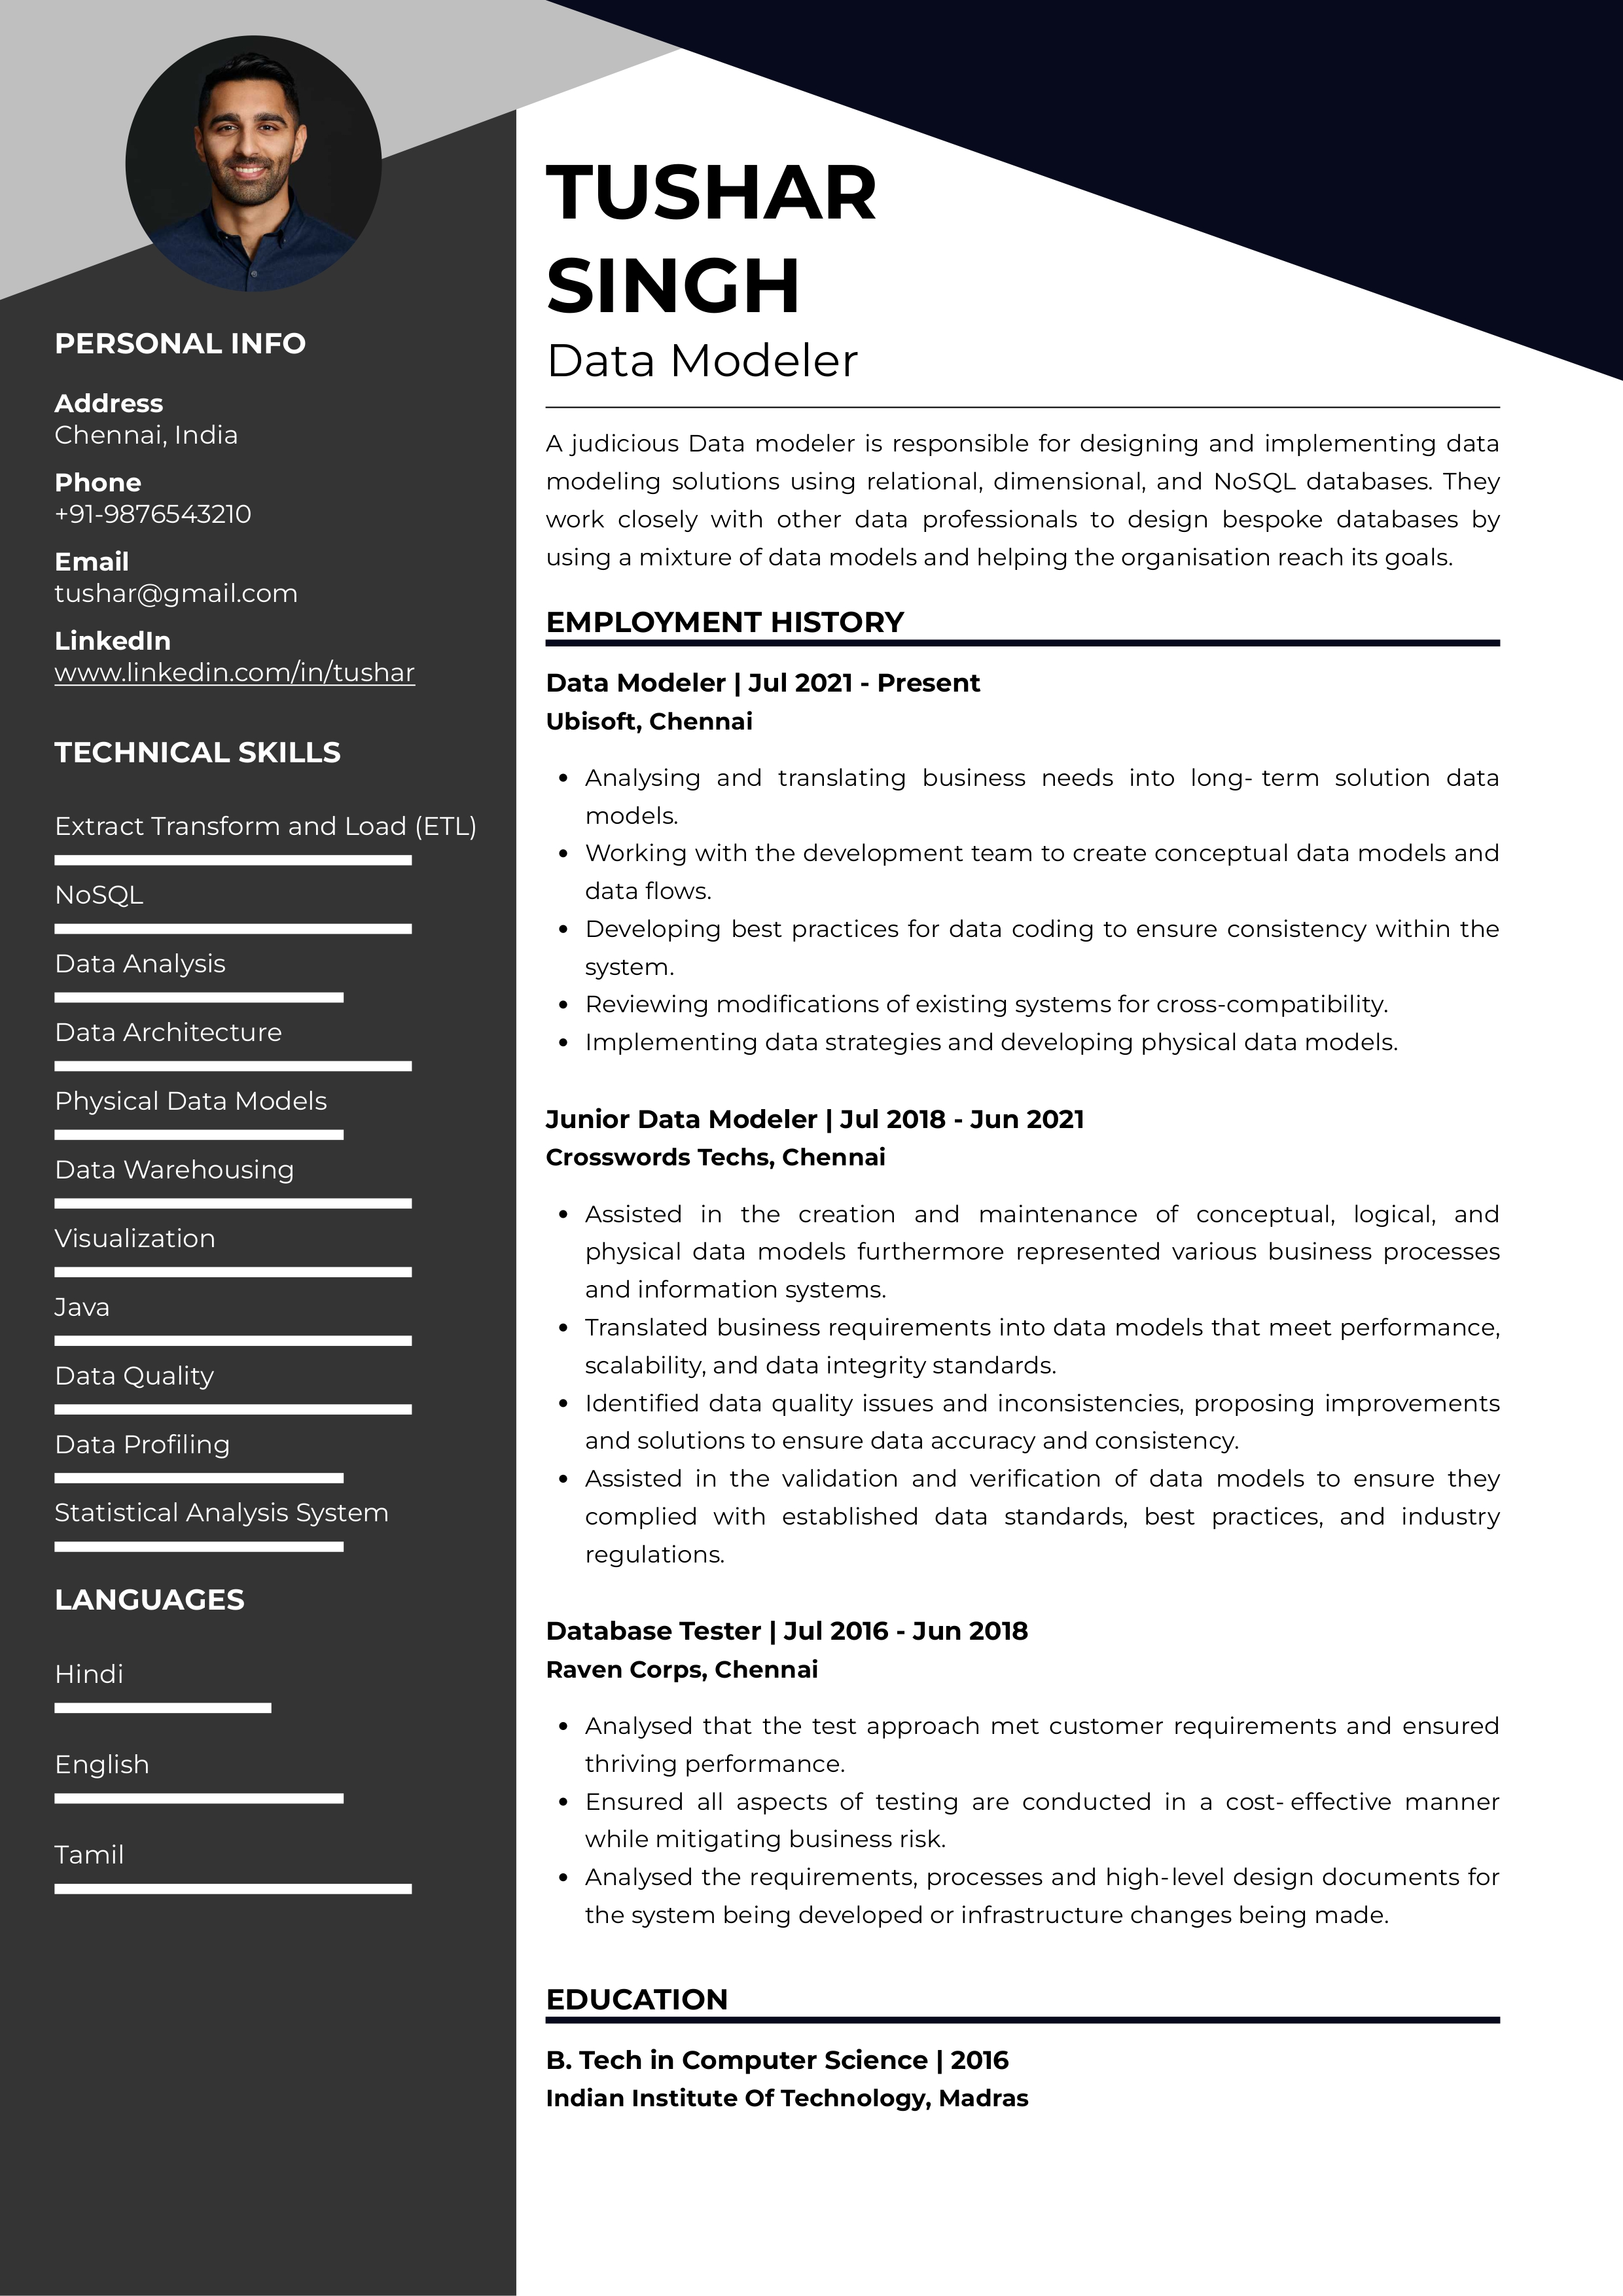 Resume of Data Modeler built on Resumod